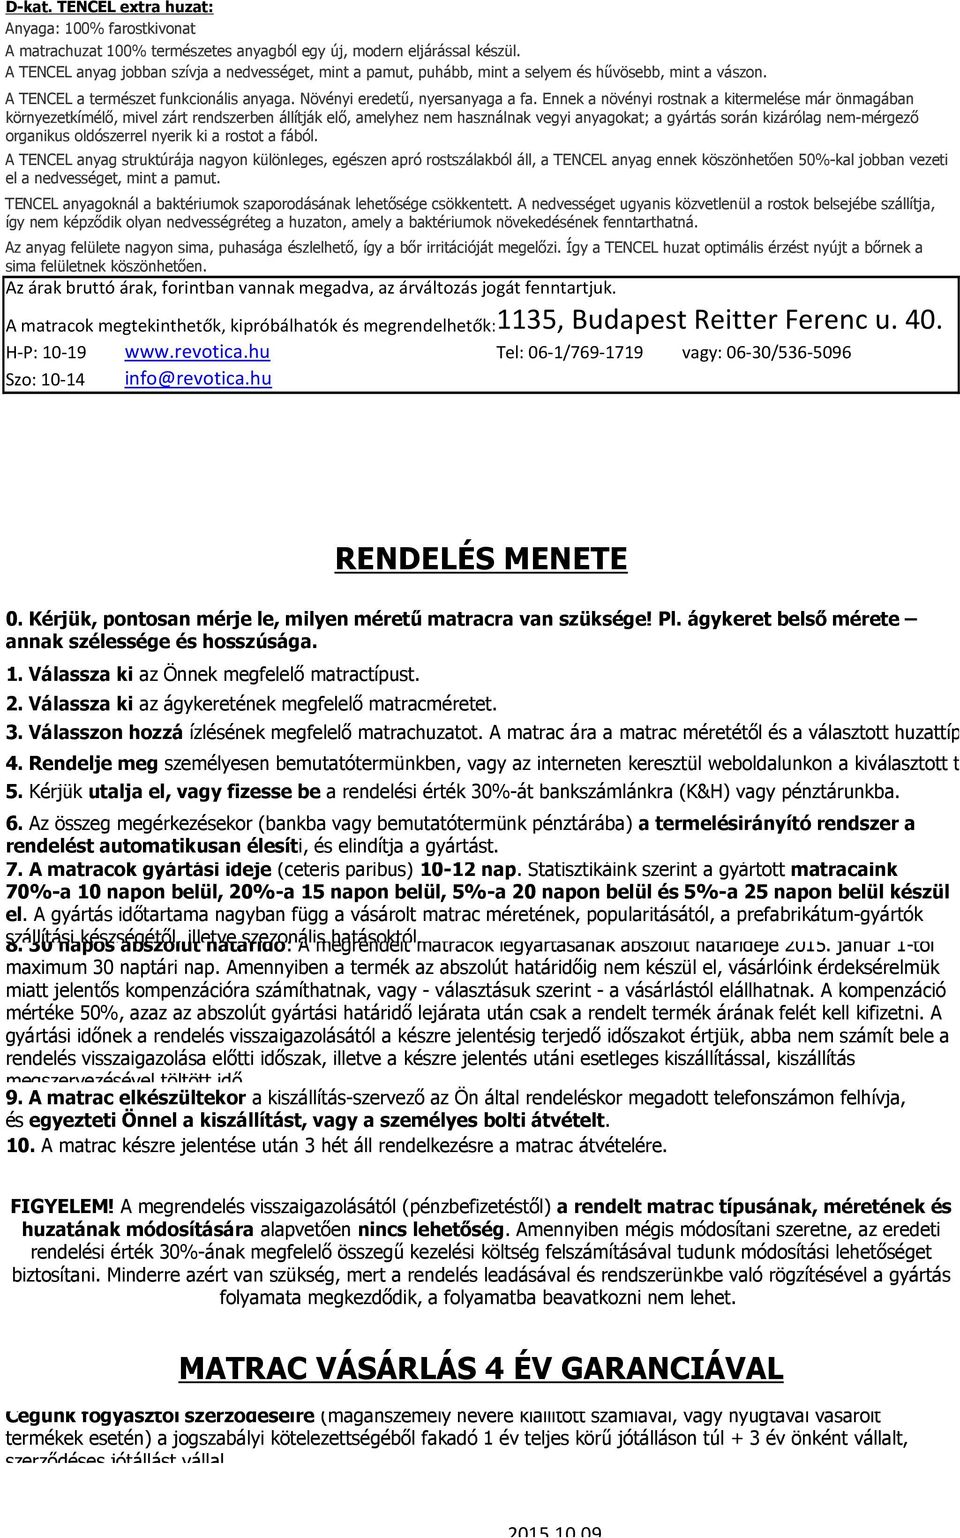 MATRAC ÁRLISTA - PDF Free Download